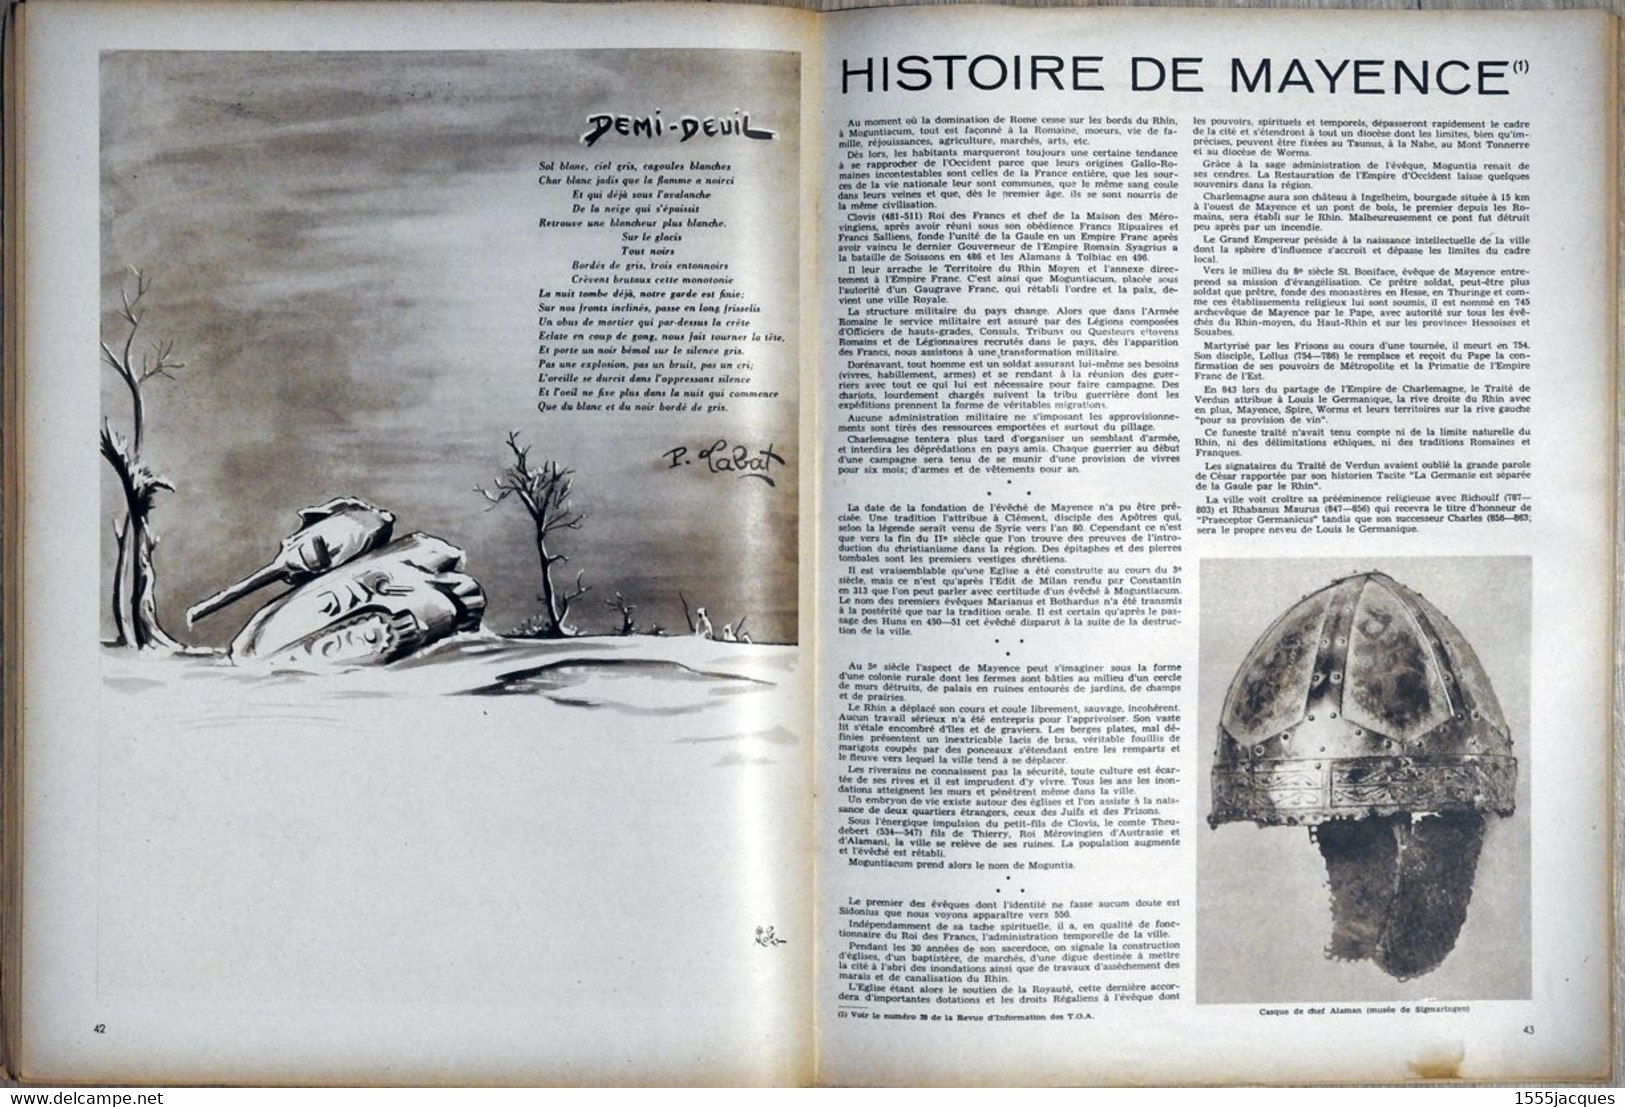 REVUE D’INFORMATION DES TROUPES FRANÇAISES D’OCCUPATION EN ALLEMAGNE N° 25 10-1947 GUYNEMER TURENNE MAYENCE COSTE-FLORET